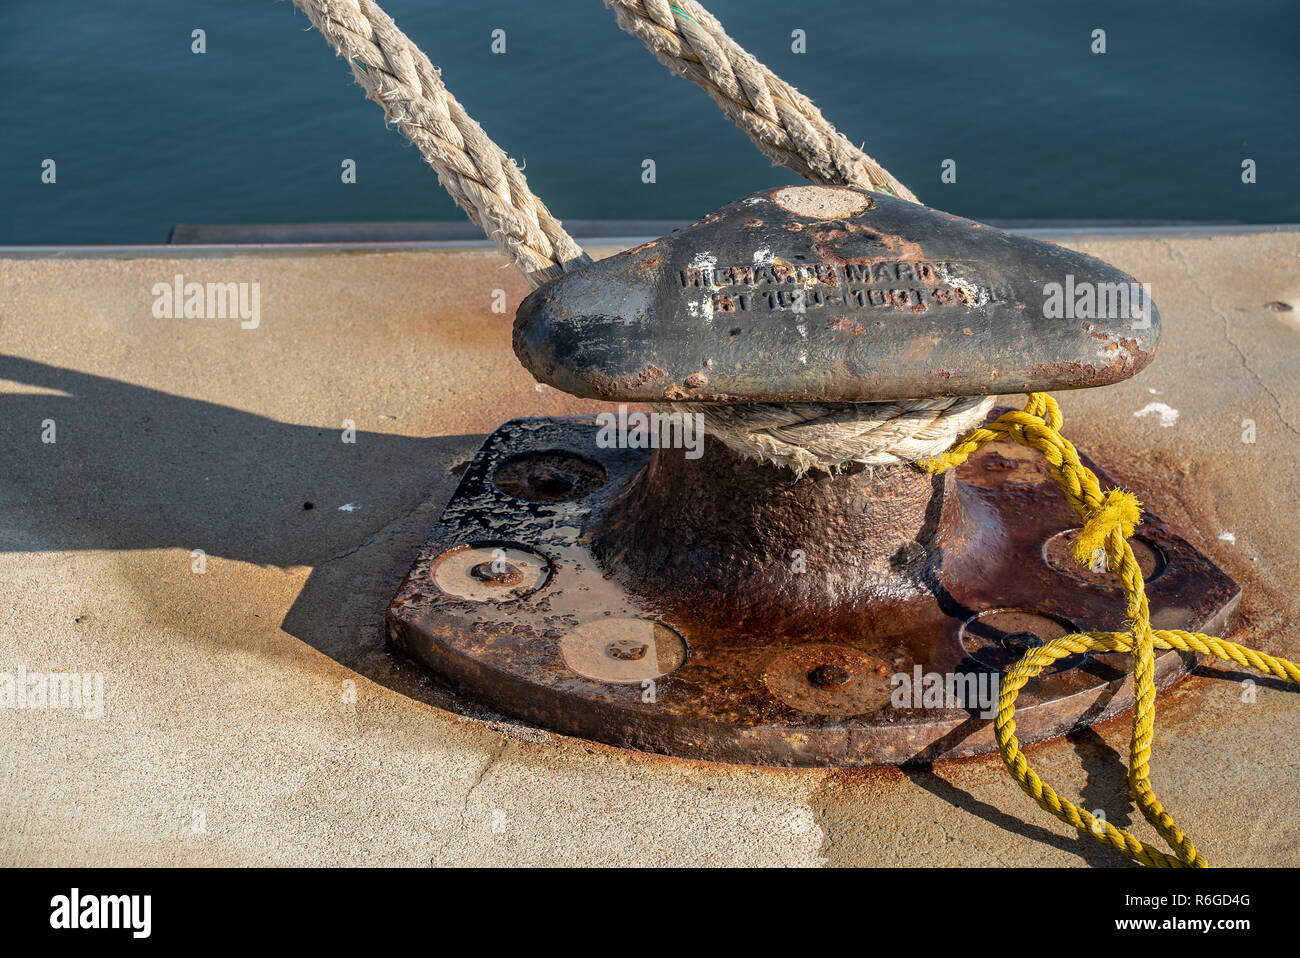 Corda di traghetto legato al metallo barca al dock Foto Stock